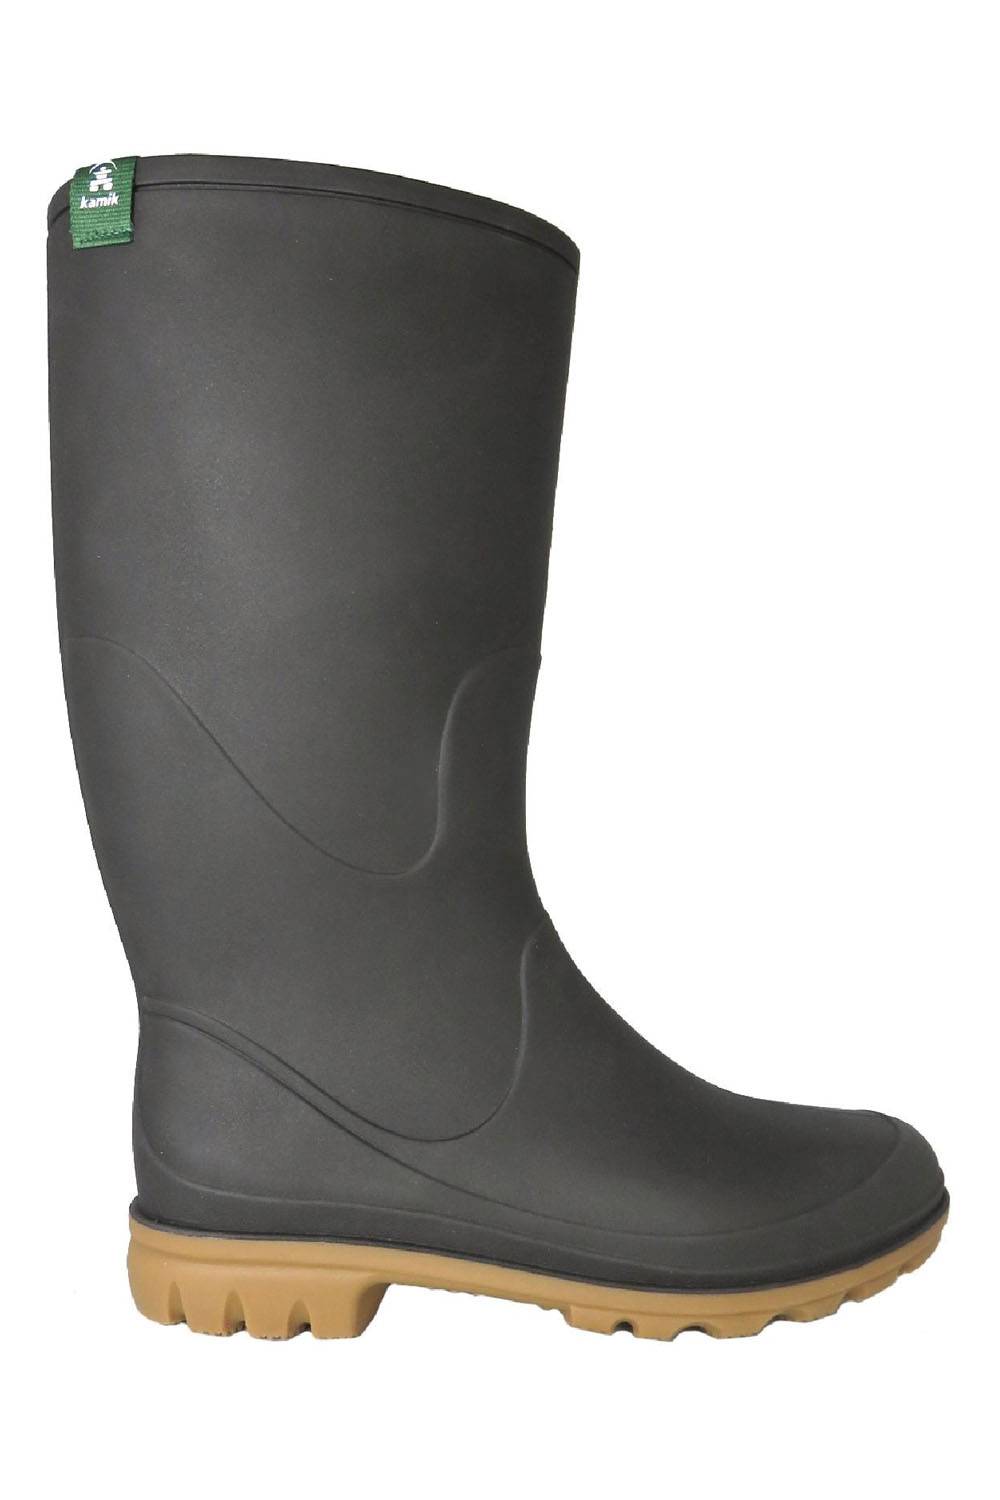 kamik eco-friendly rain boots